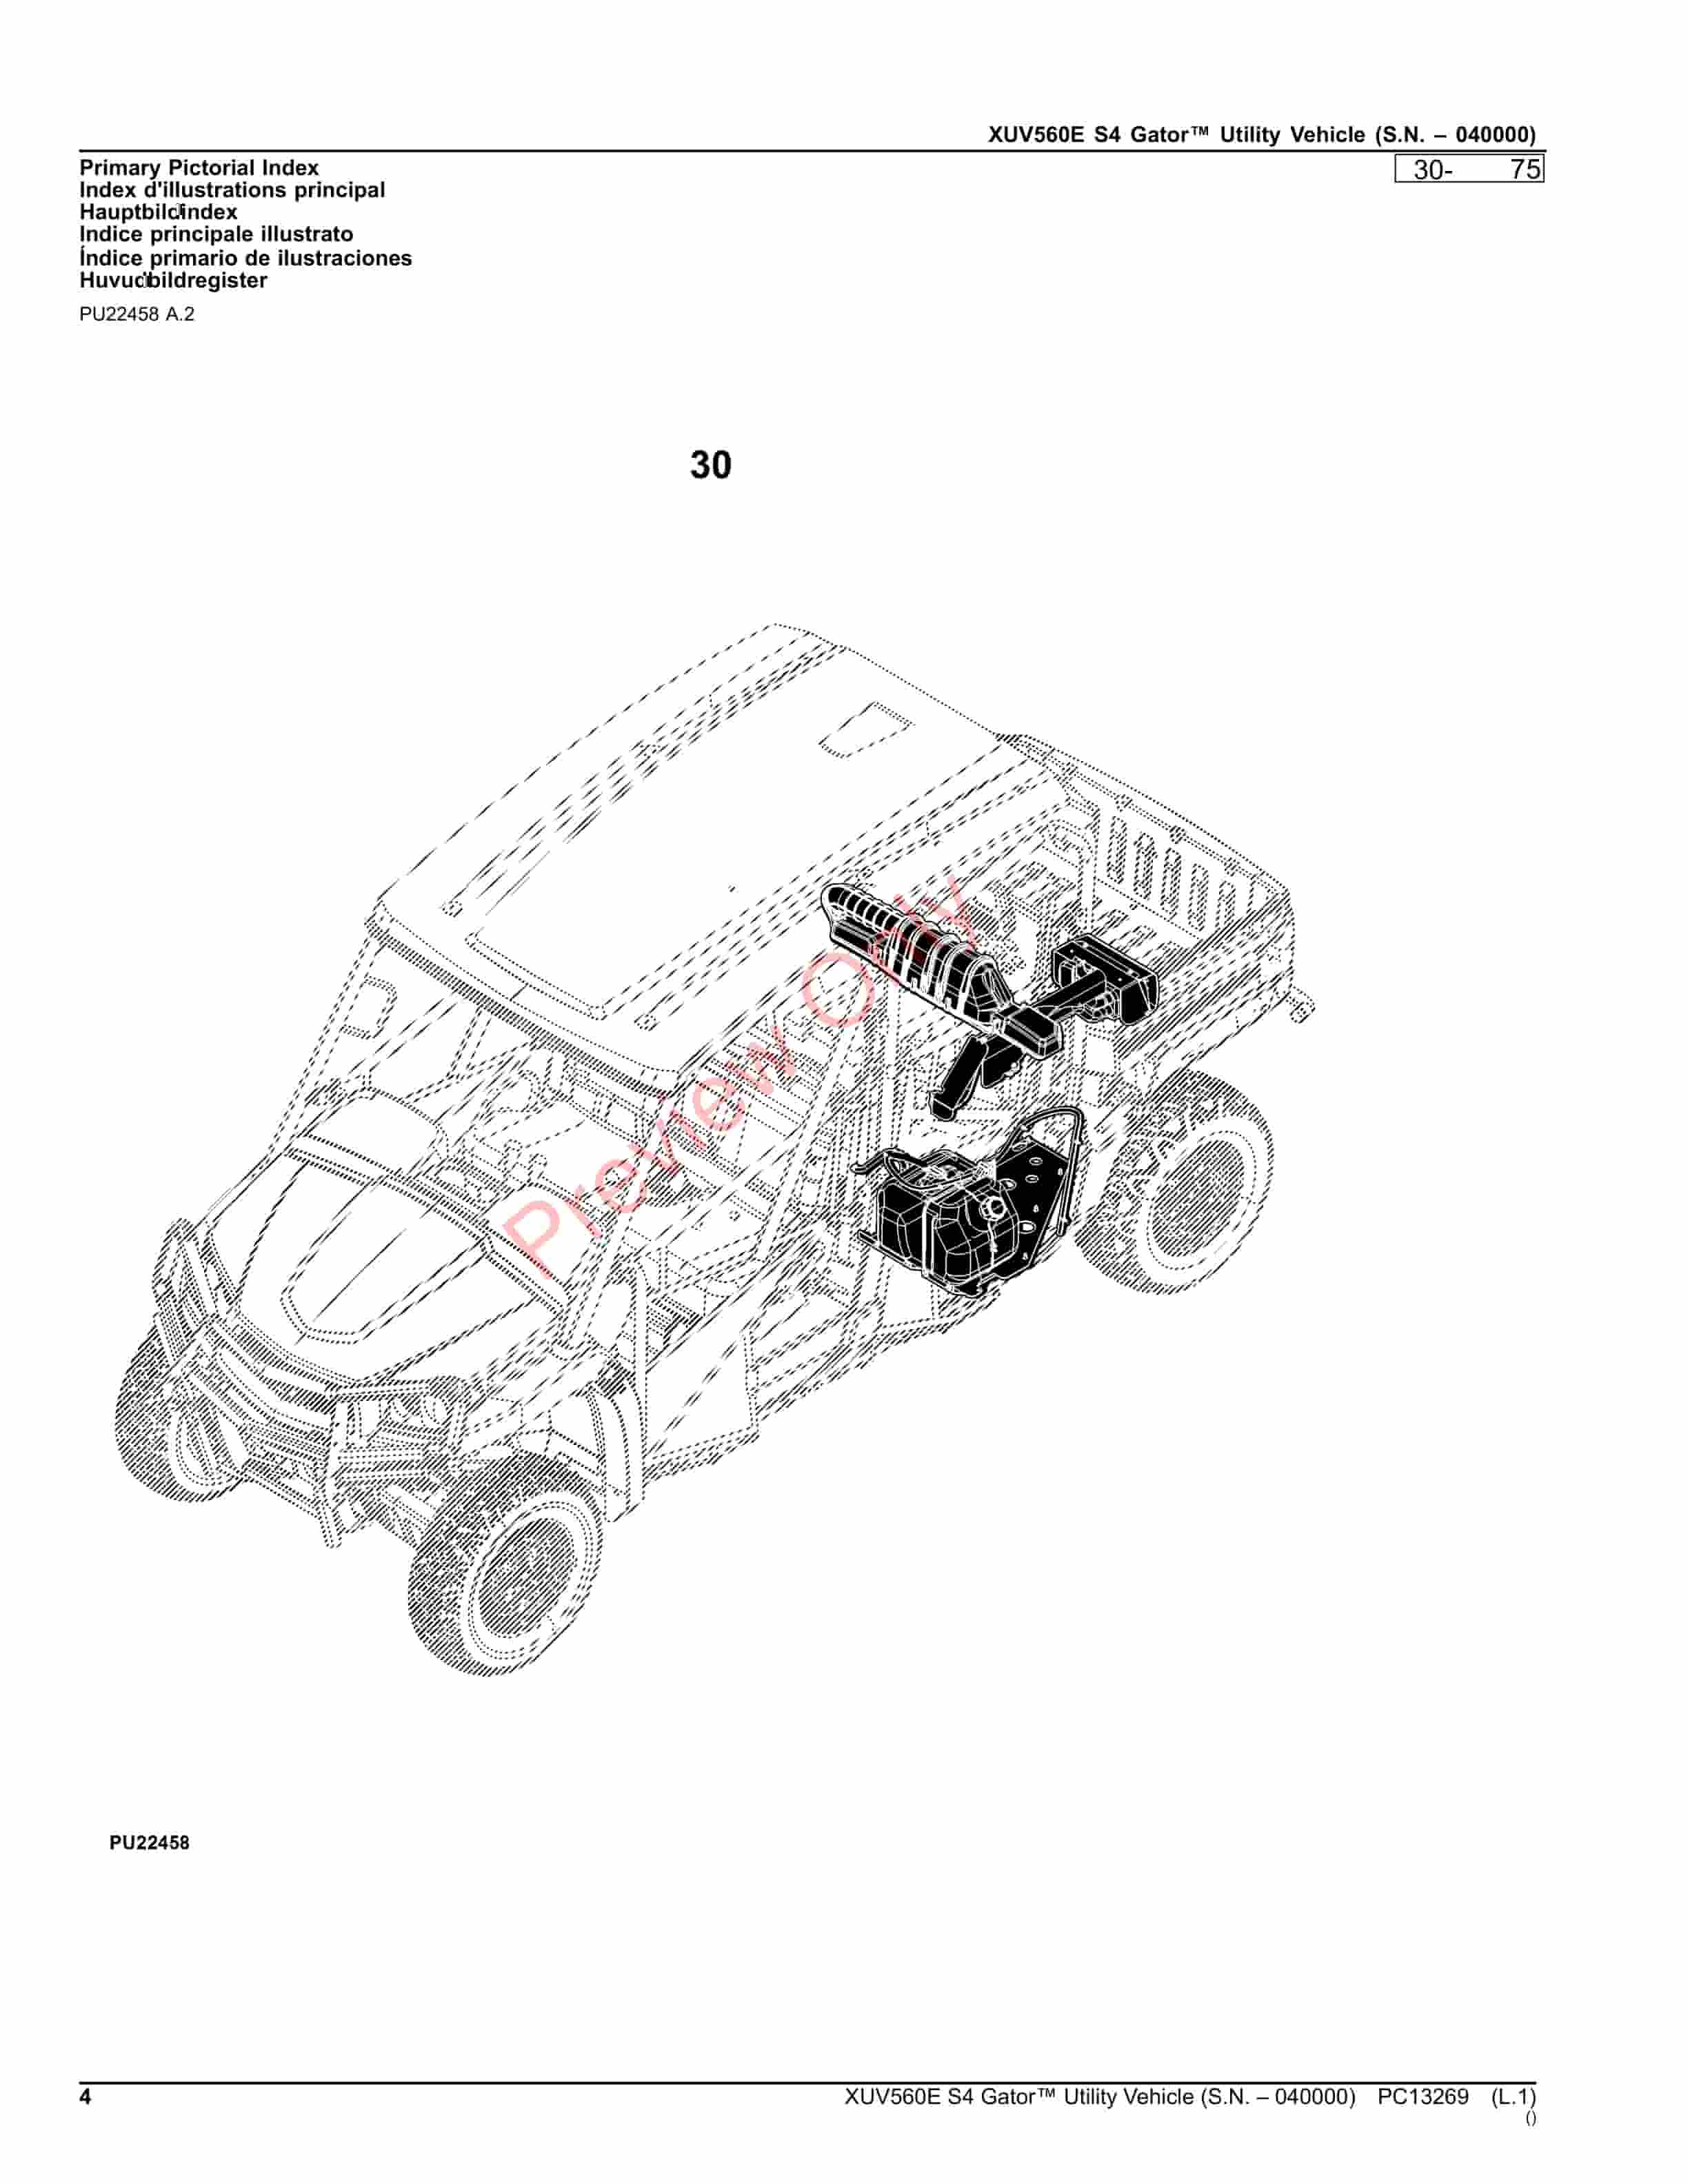 John Deere XUV560E S4 Gator Utility Vehicle (S.N. 040000) Parts Catalog PC13269 23NOV23-4